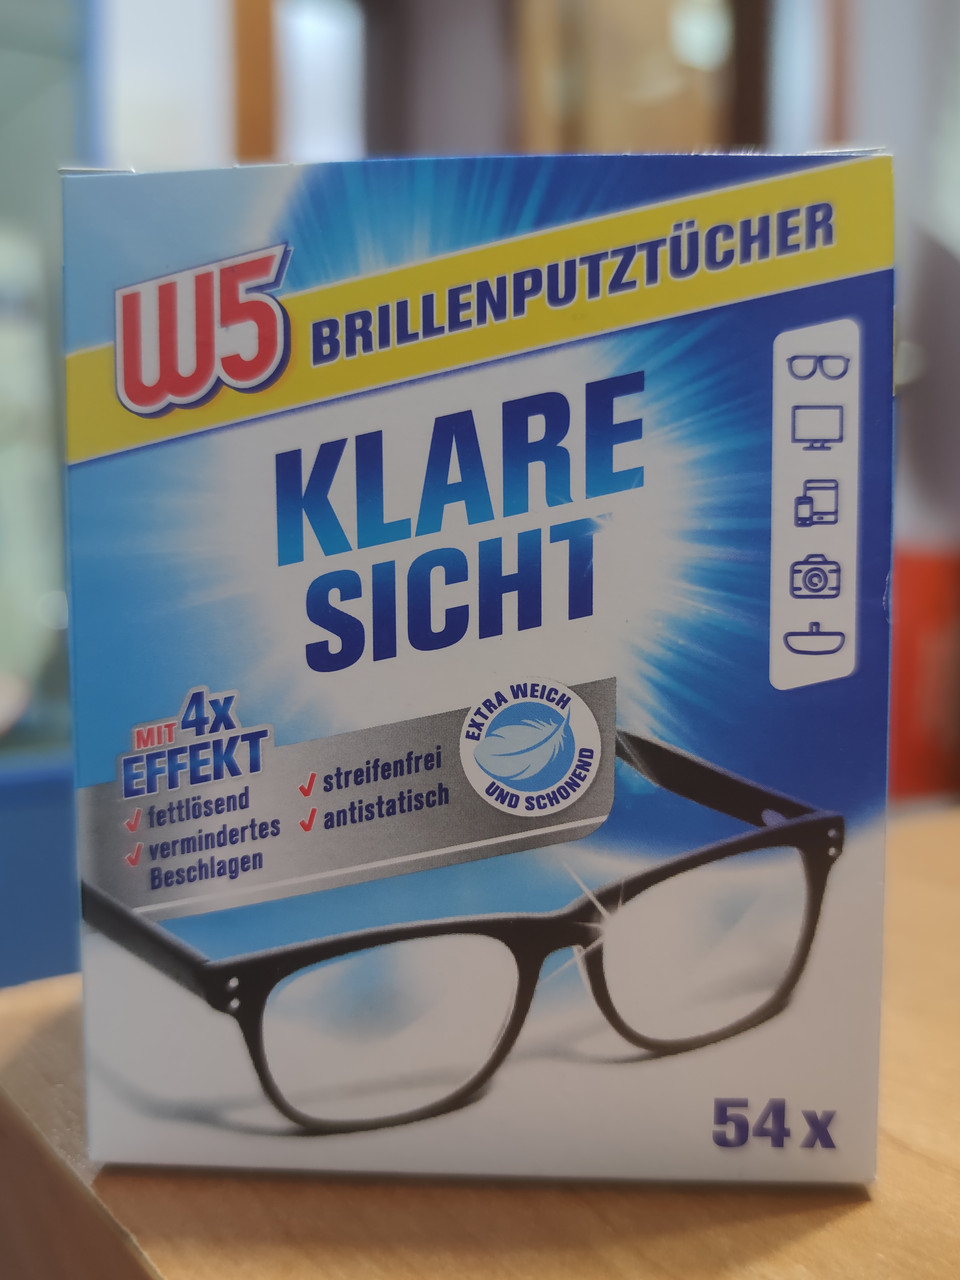 Влажные салфетки для очков  Германия W5 Brillenputzttucher KLARE SICHT 54 штуки в упаковке